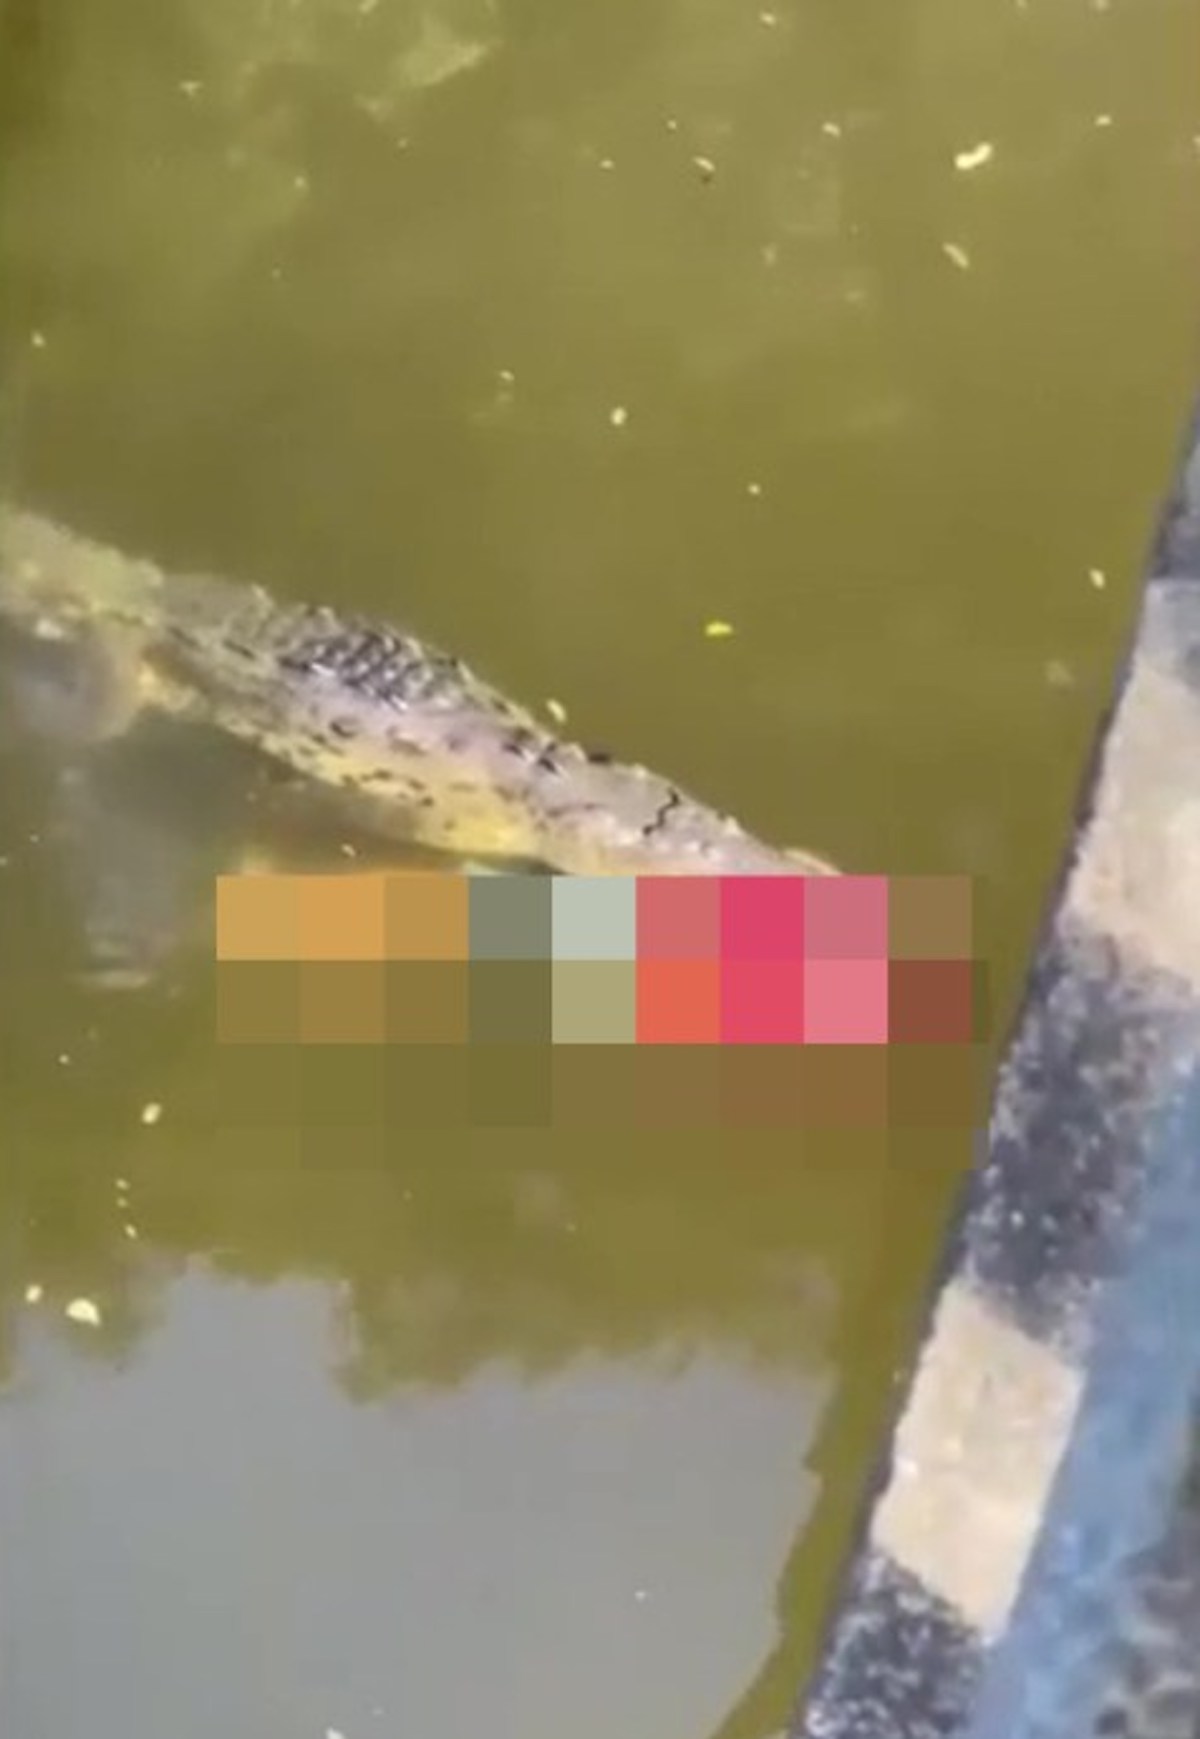 Calciatore attaccato e ucciso da un coccodrillo: il video